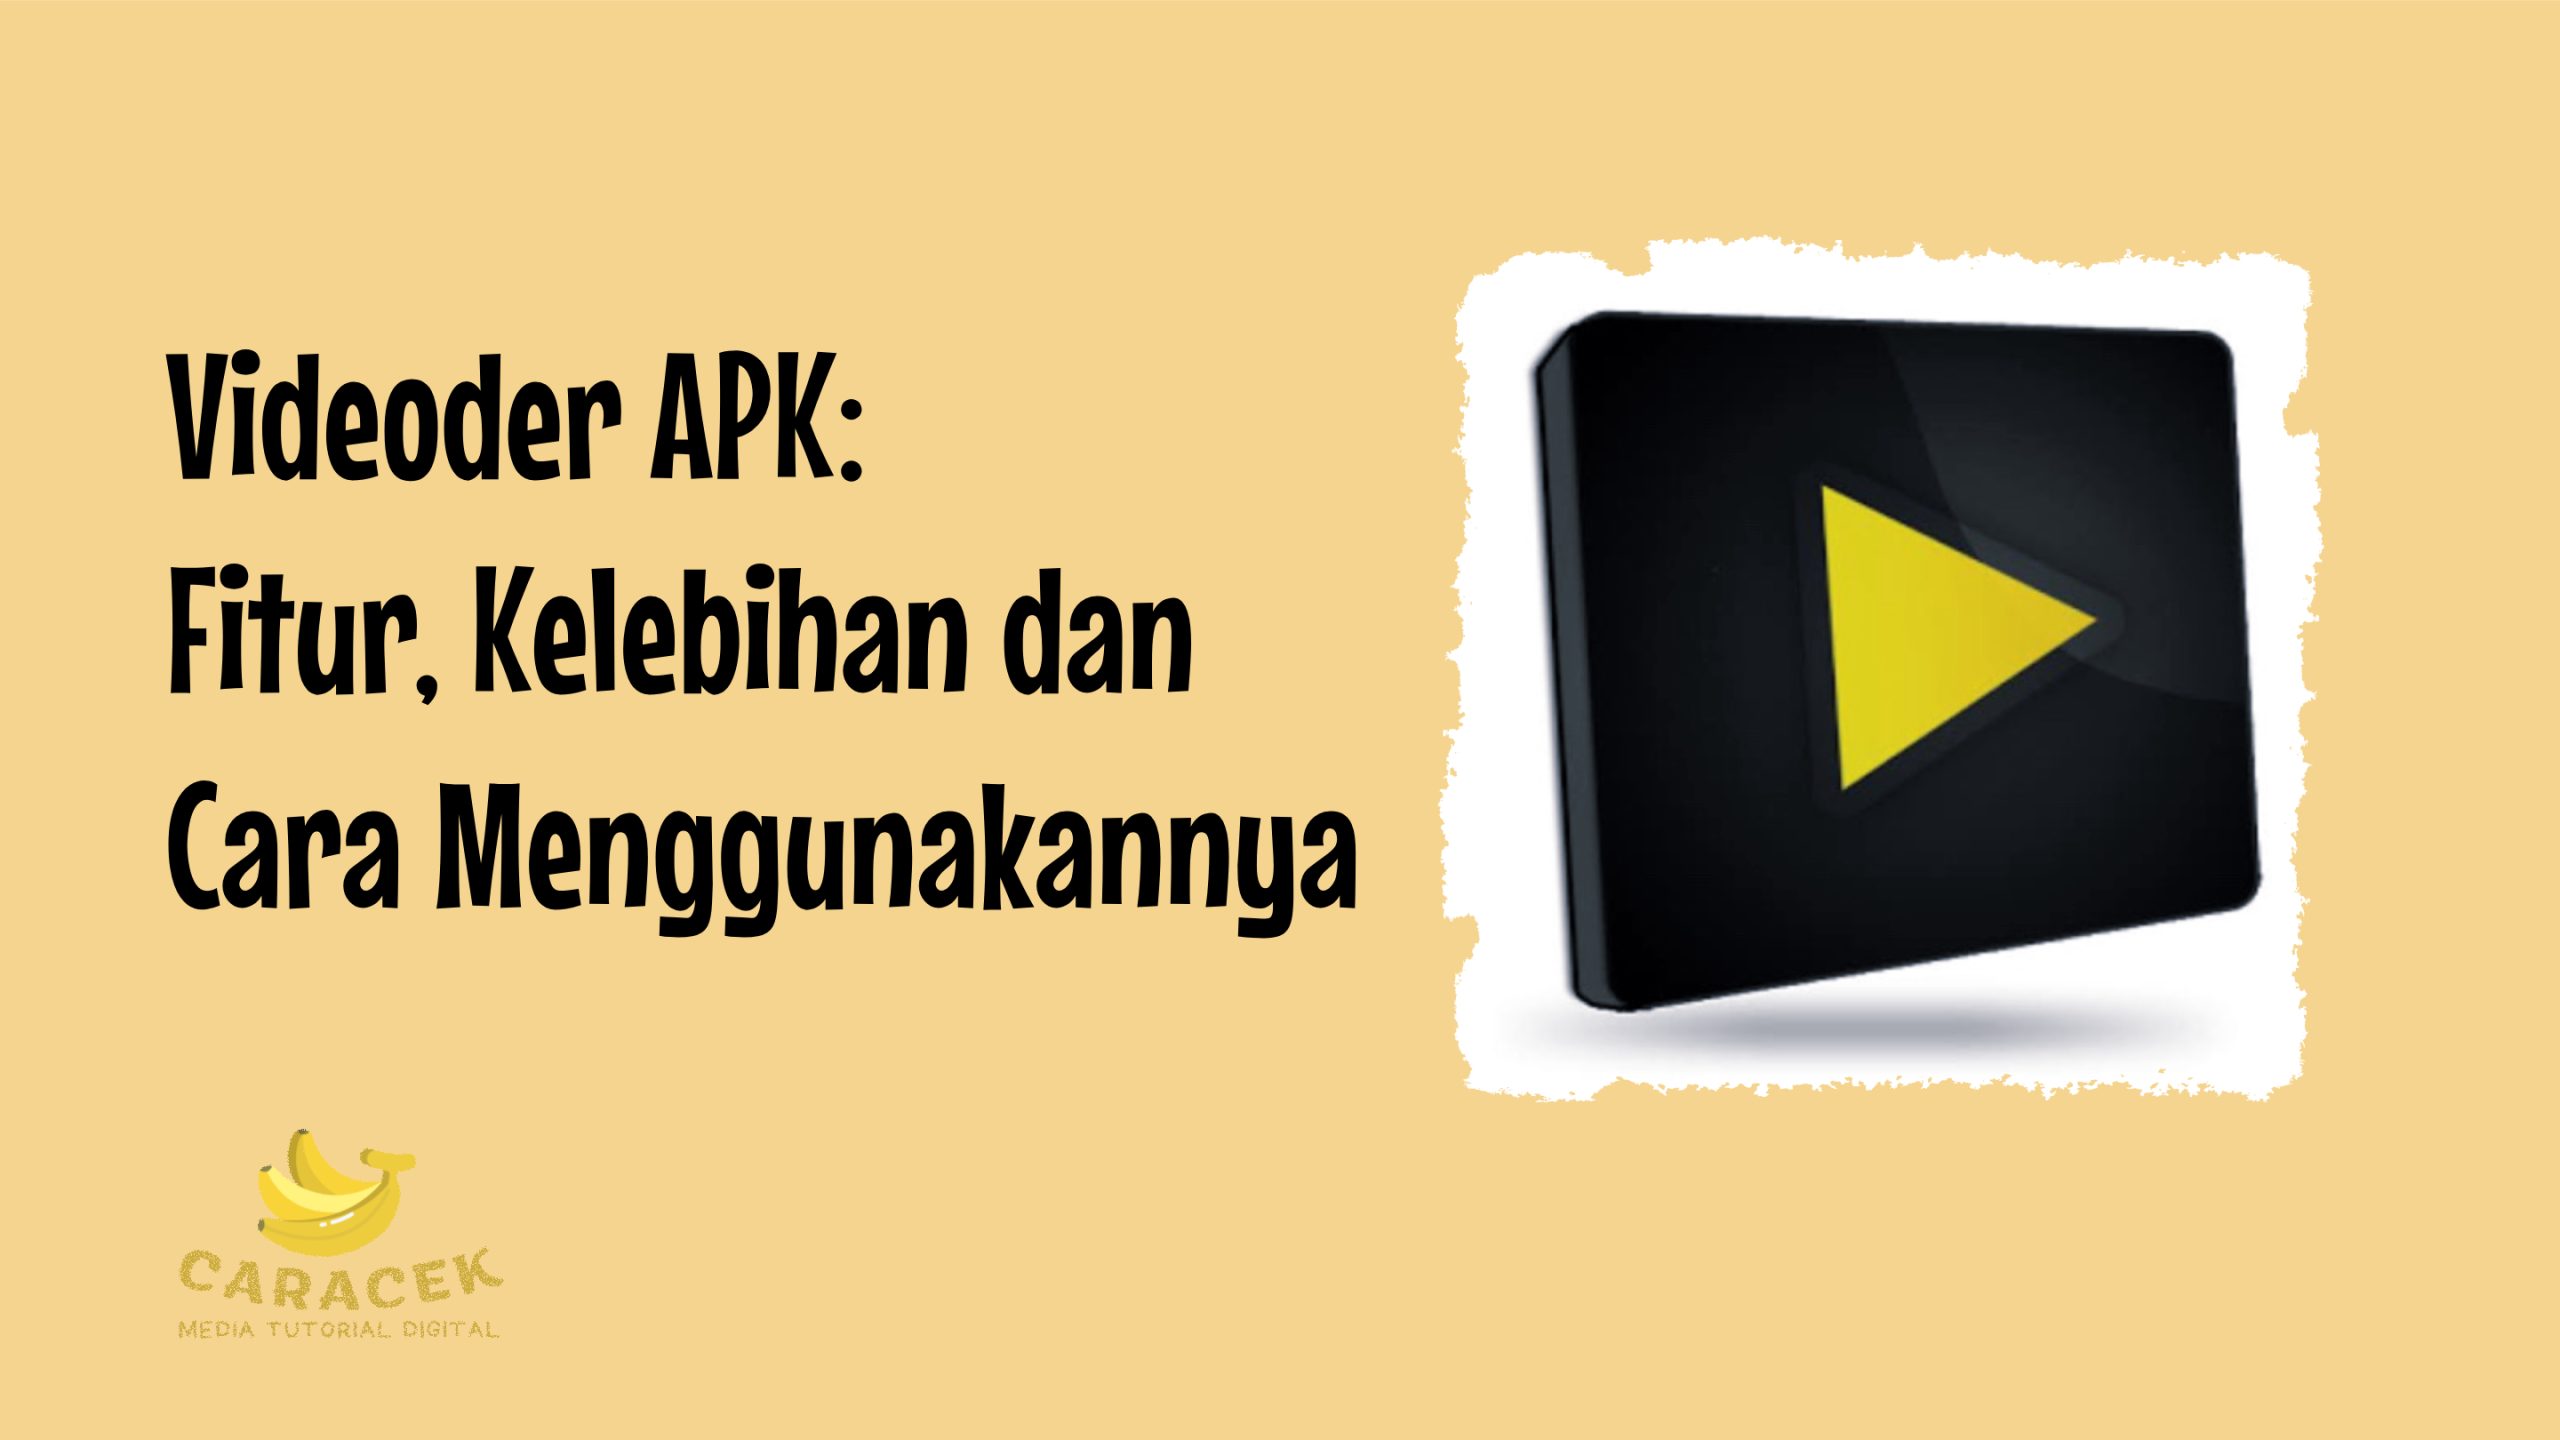 Videoder APK